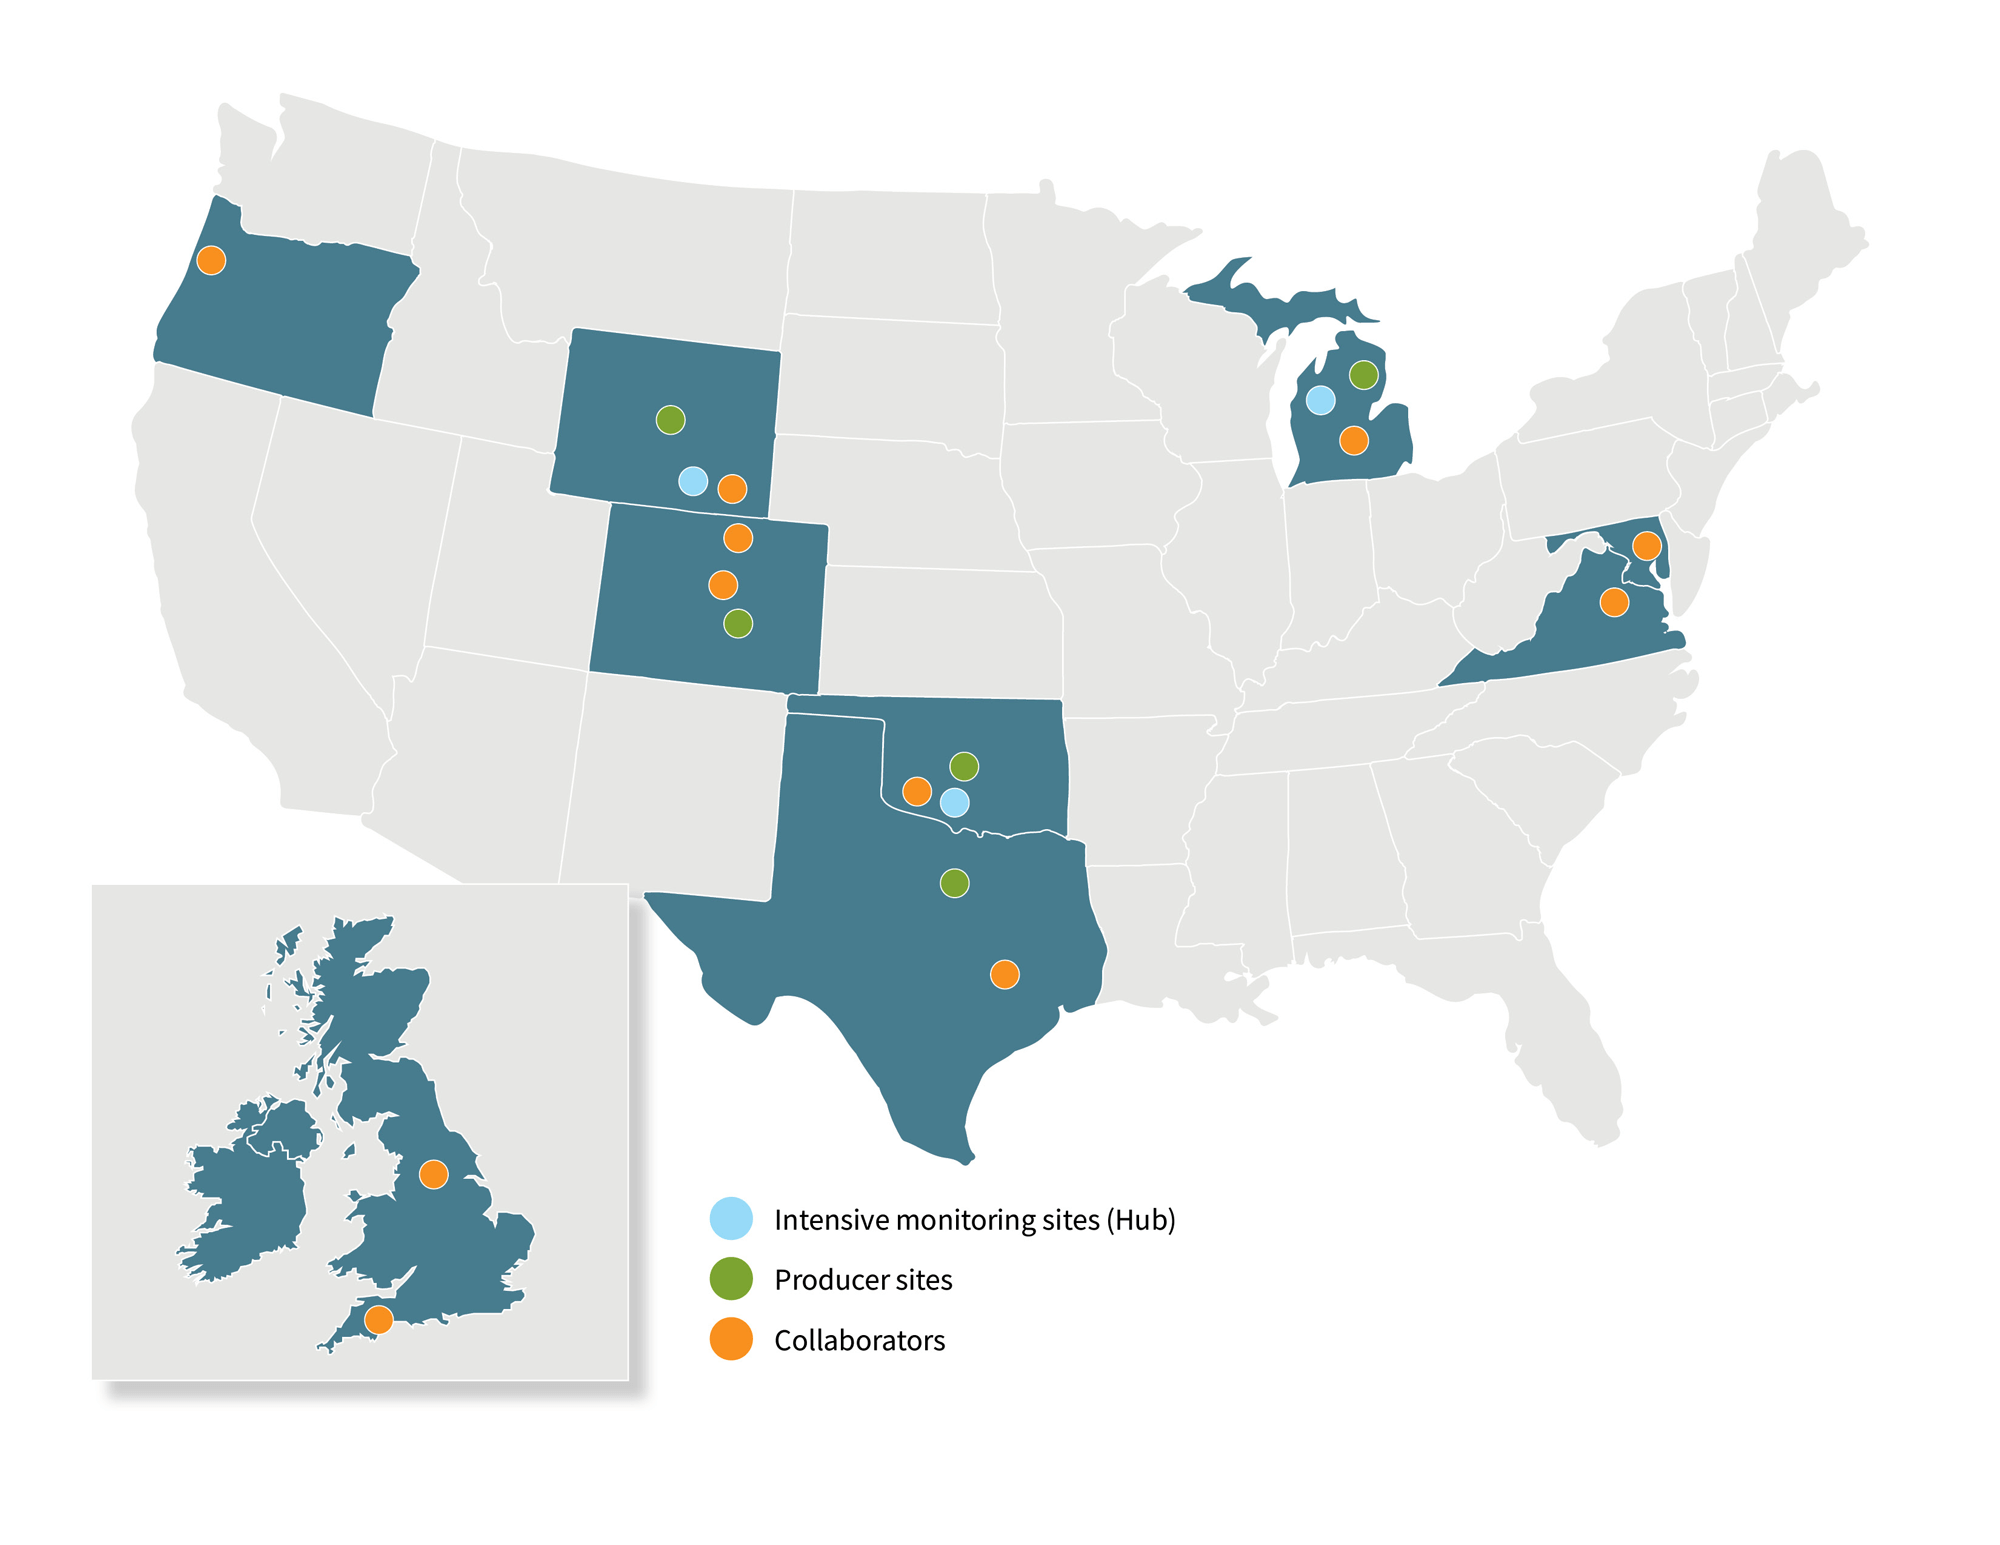 地图显示参加组织在美国和联合王国境内的位置,显示密集监控网站(Hubs)、制作网站和协作者